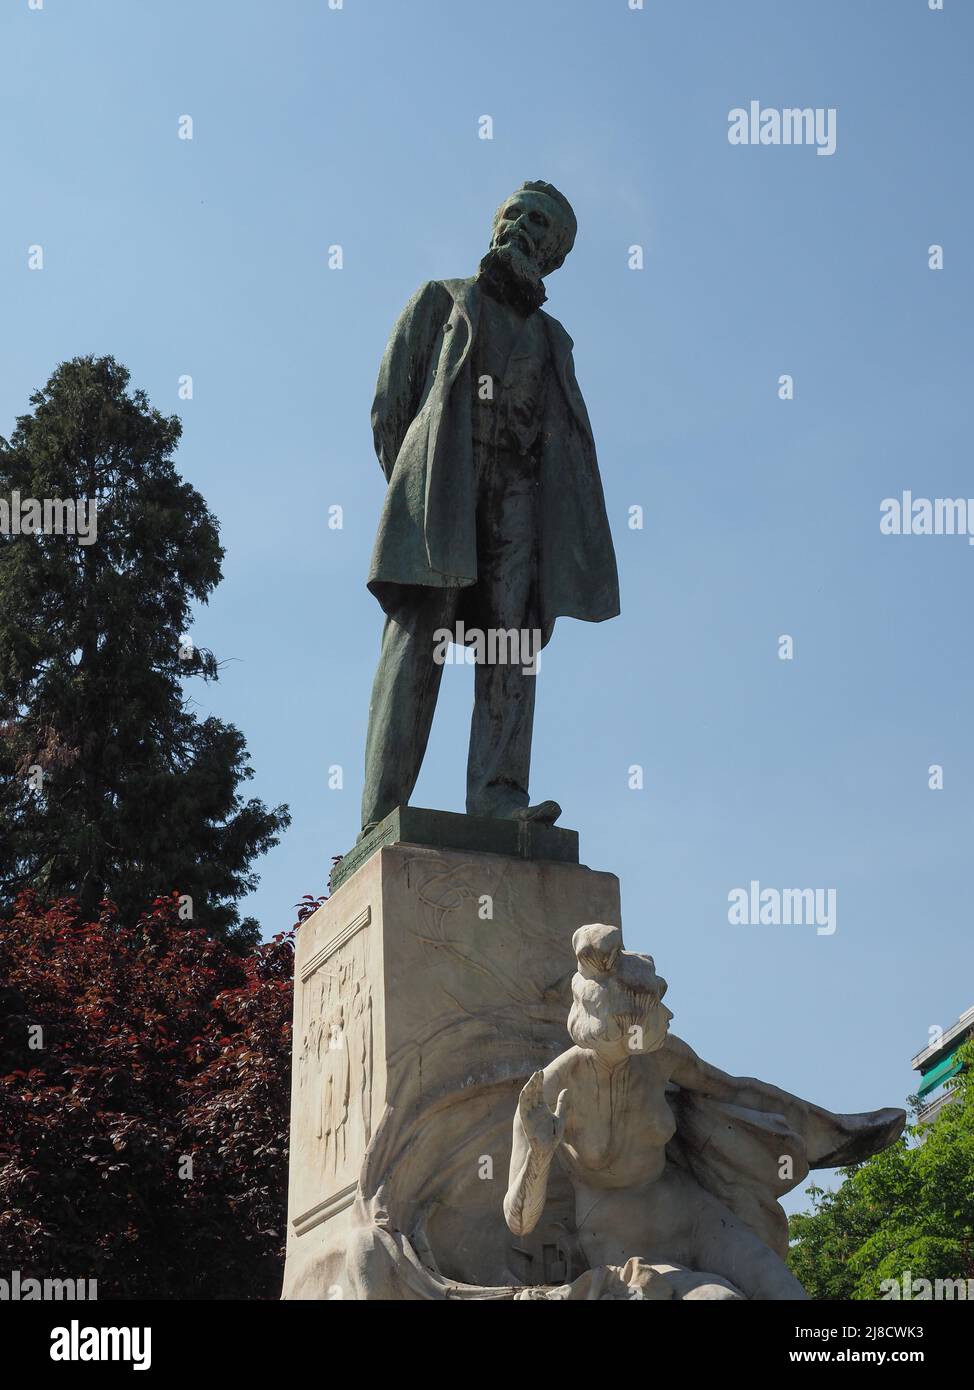 Monumento allo scienziato italiano Galileo Ferraris circa nel 1903 dello scultore Luigi Contratti di Torino Foto Stock